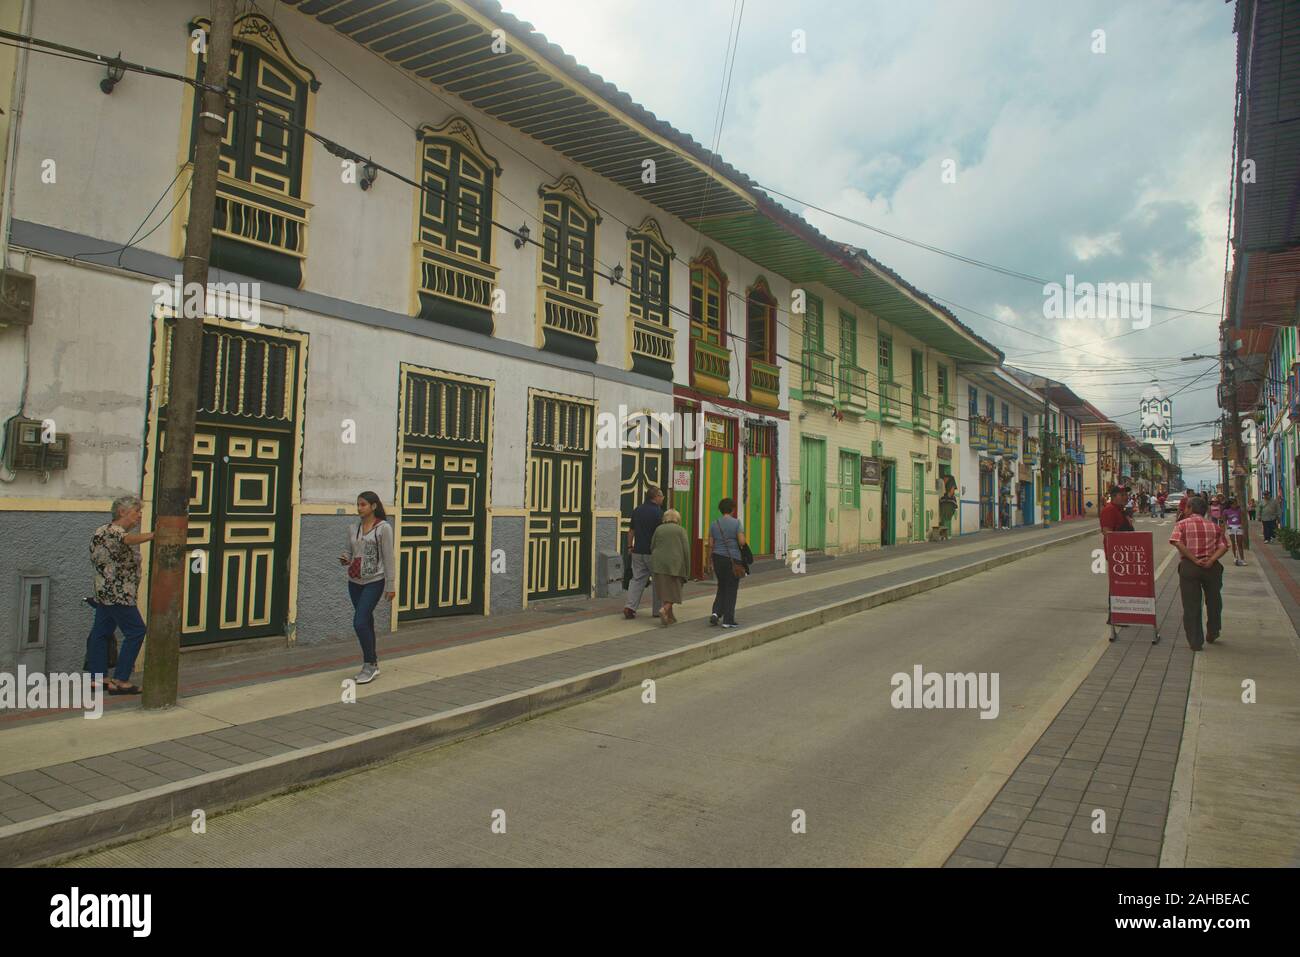 L'architecture coloniale colorée à Filandia dans la Zona Cafetera, Colombie Banque D'Images